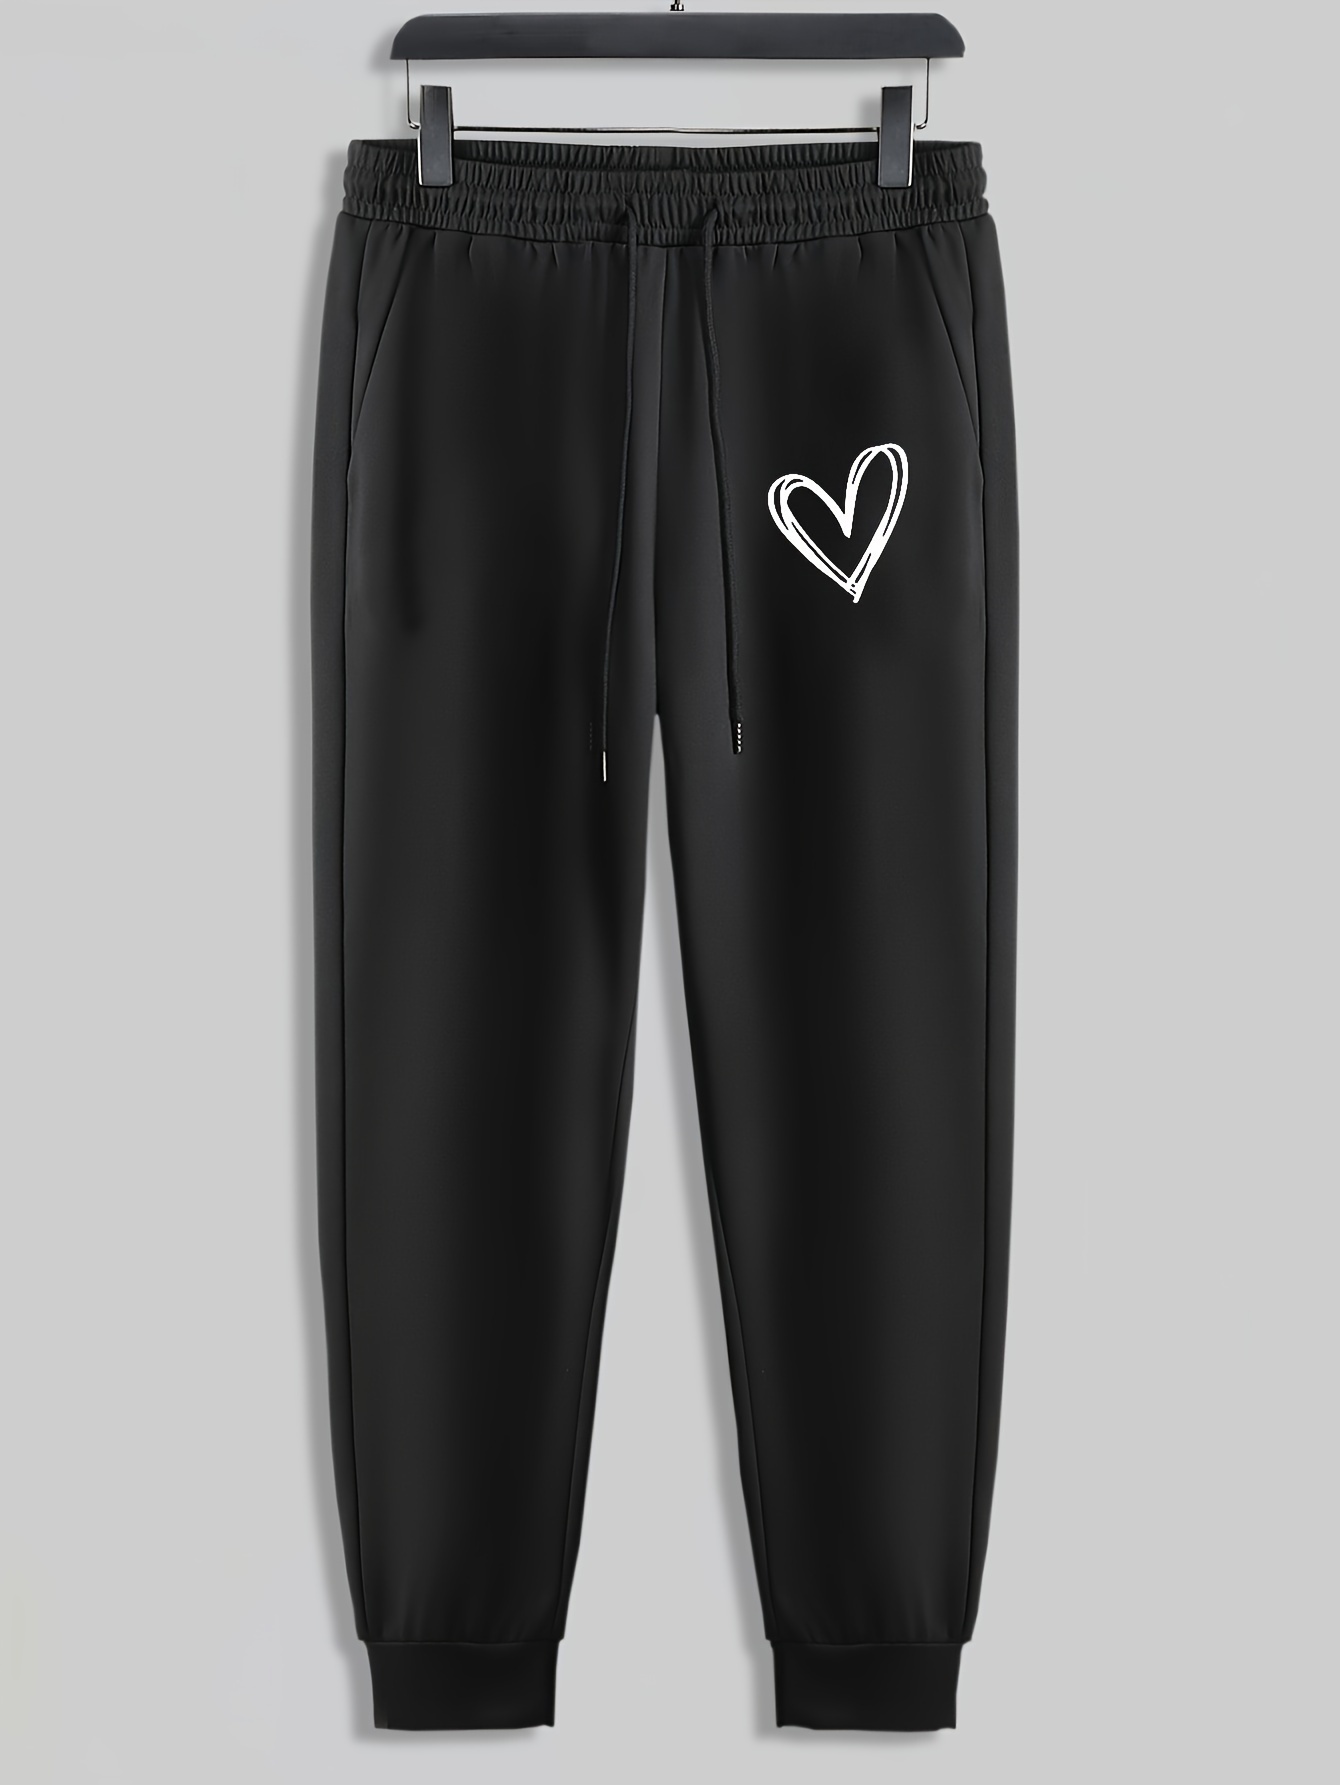 KS-QON BENG Watercolor Hearts Men's Sweatpants Sports Long Pants